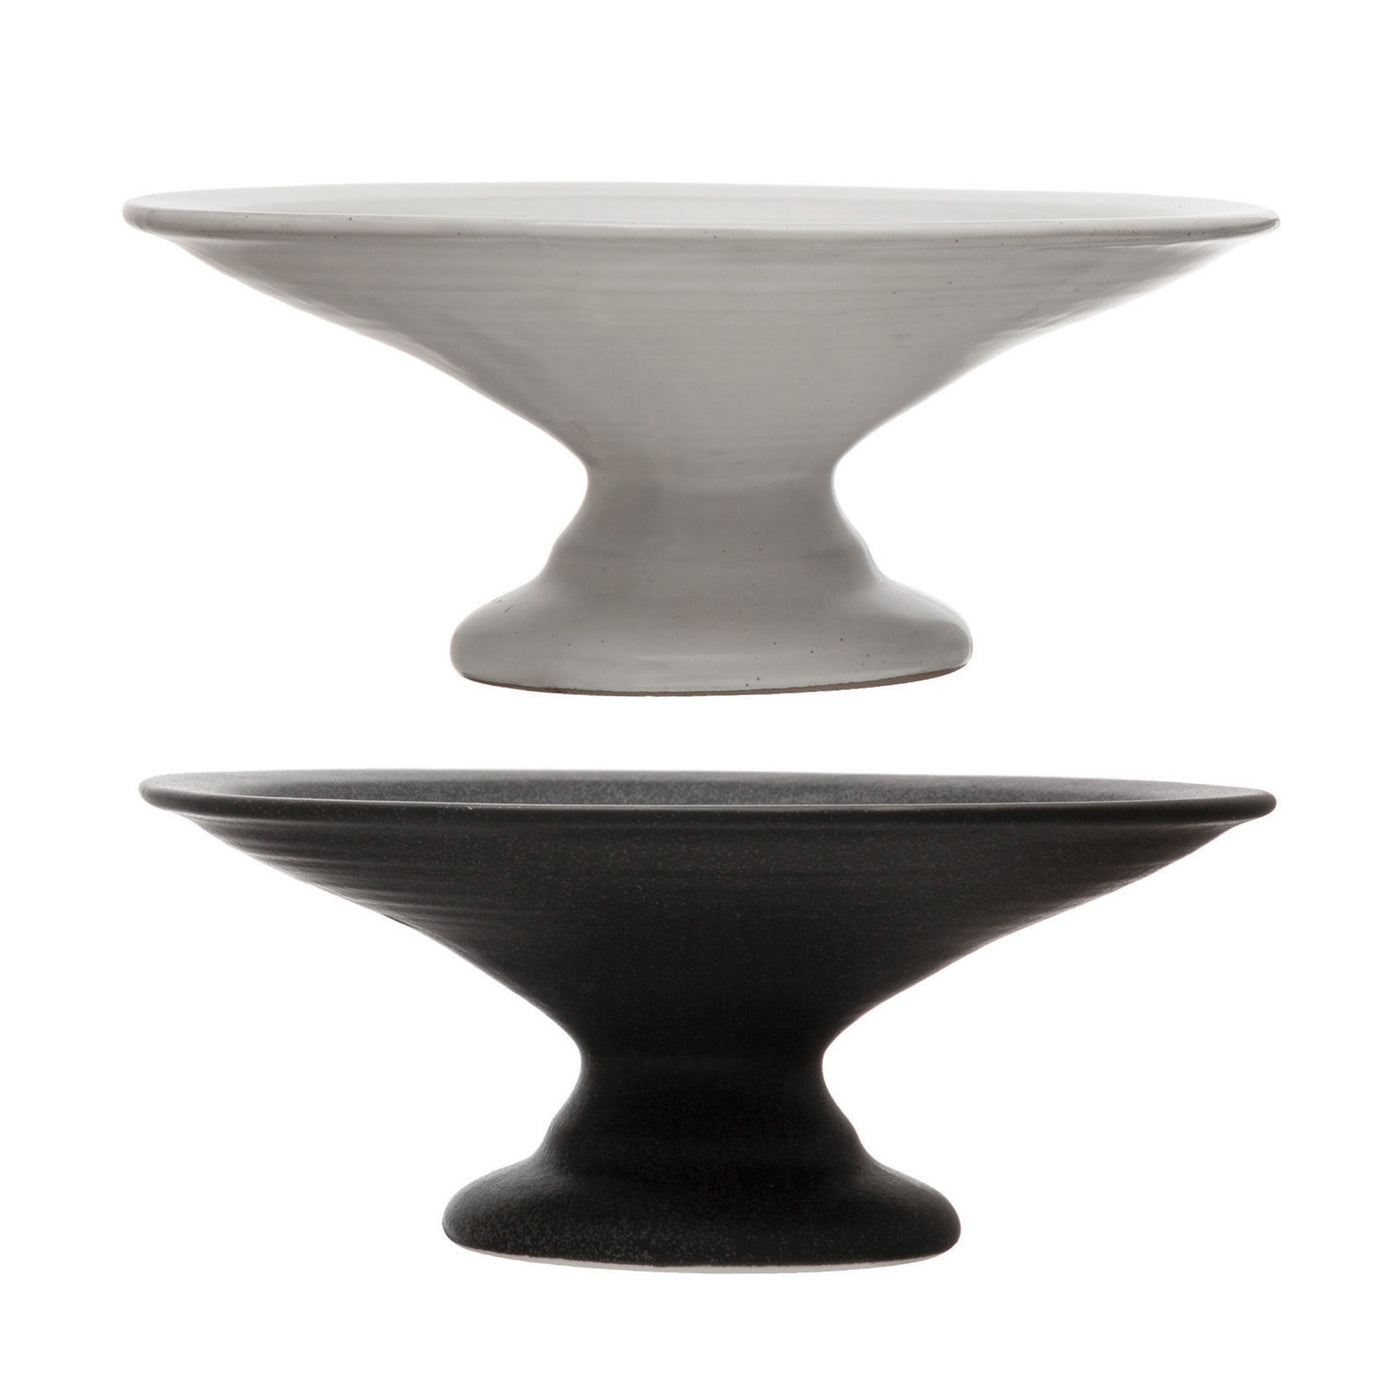 Stoneware Pedestal - 2 colors